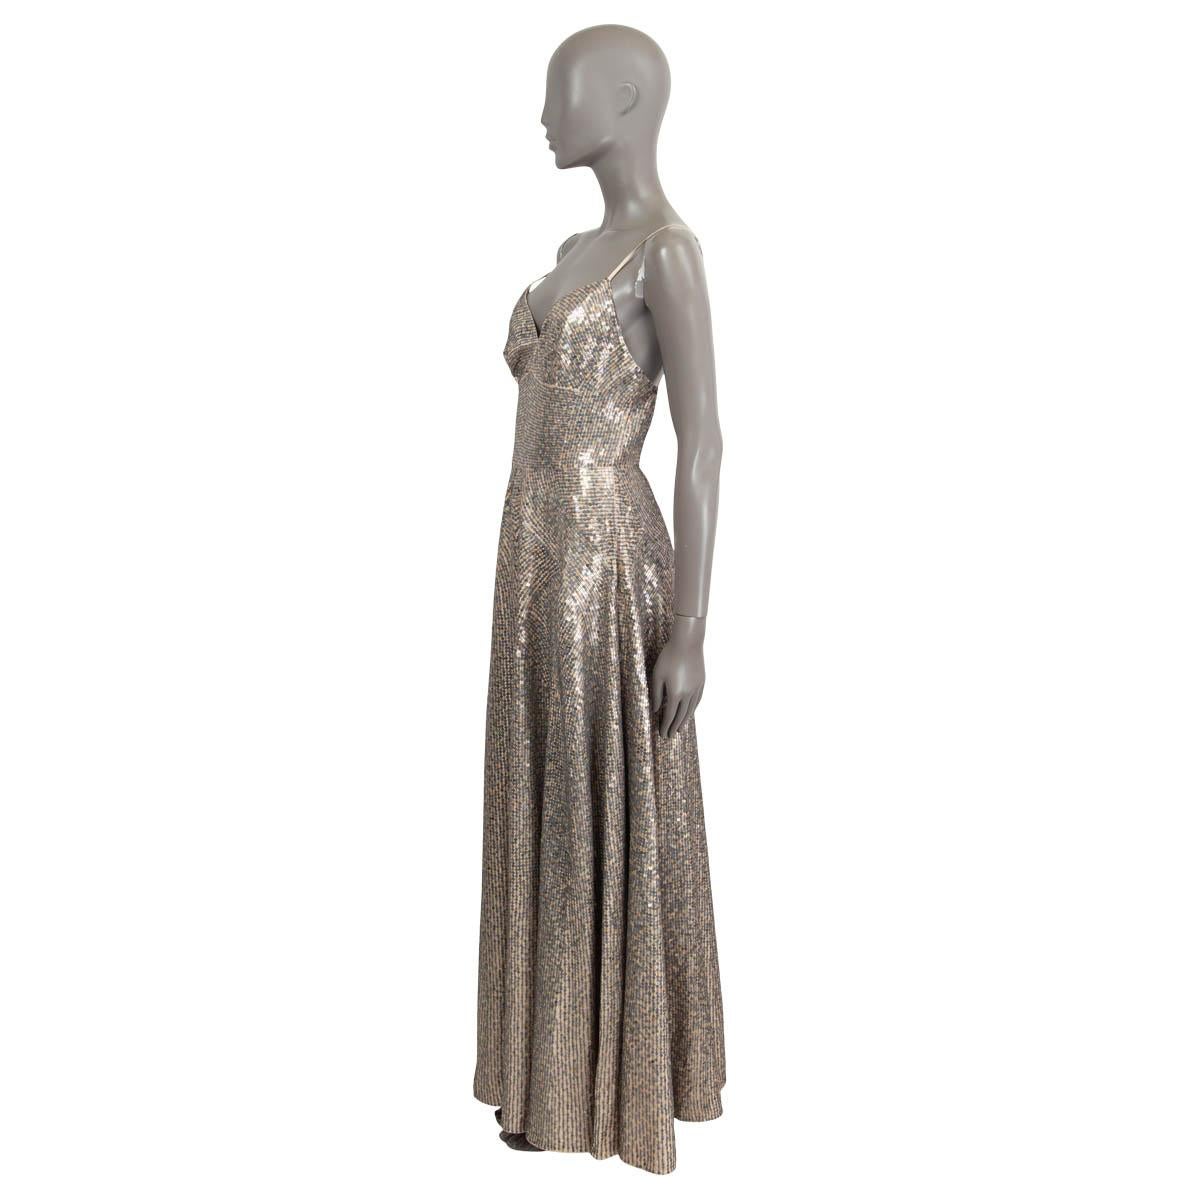 100% authentique Christian Dior 2018 Pre-Fall robe de soirée évasée sans manches, ornée de paillettes grises et dorées. Les seuqins sont cousus sur de la soie nue (100 %). La robe s'ouvre par une fermeture éclair au dos et est doublée de soie nude